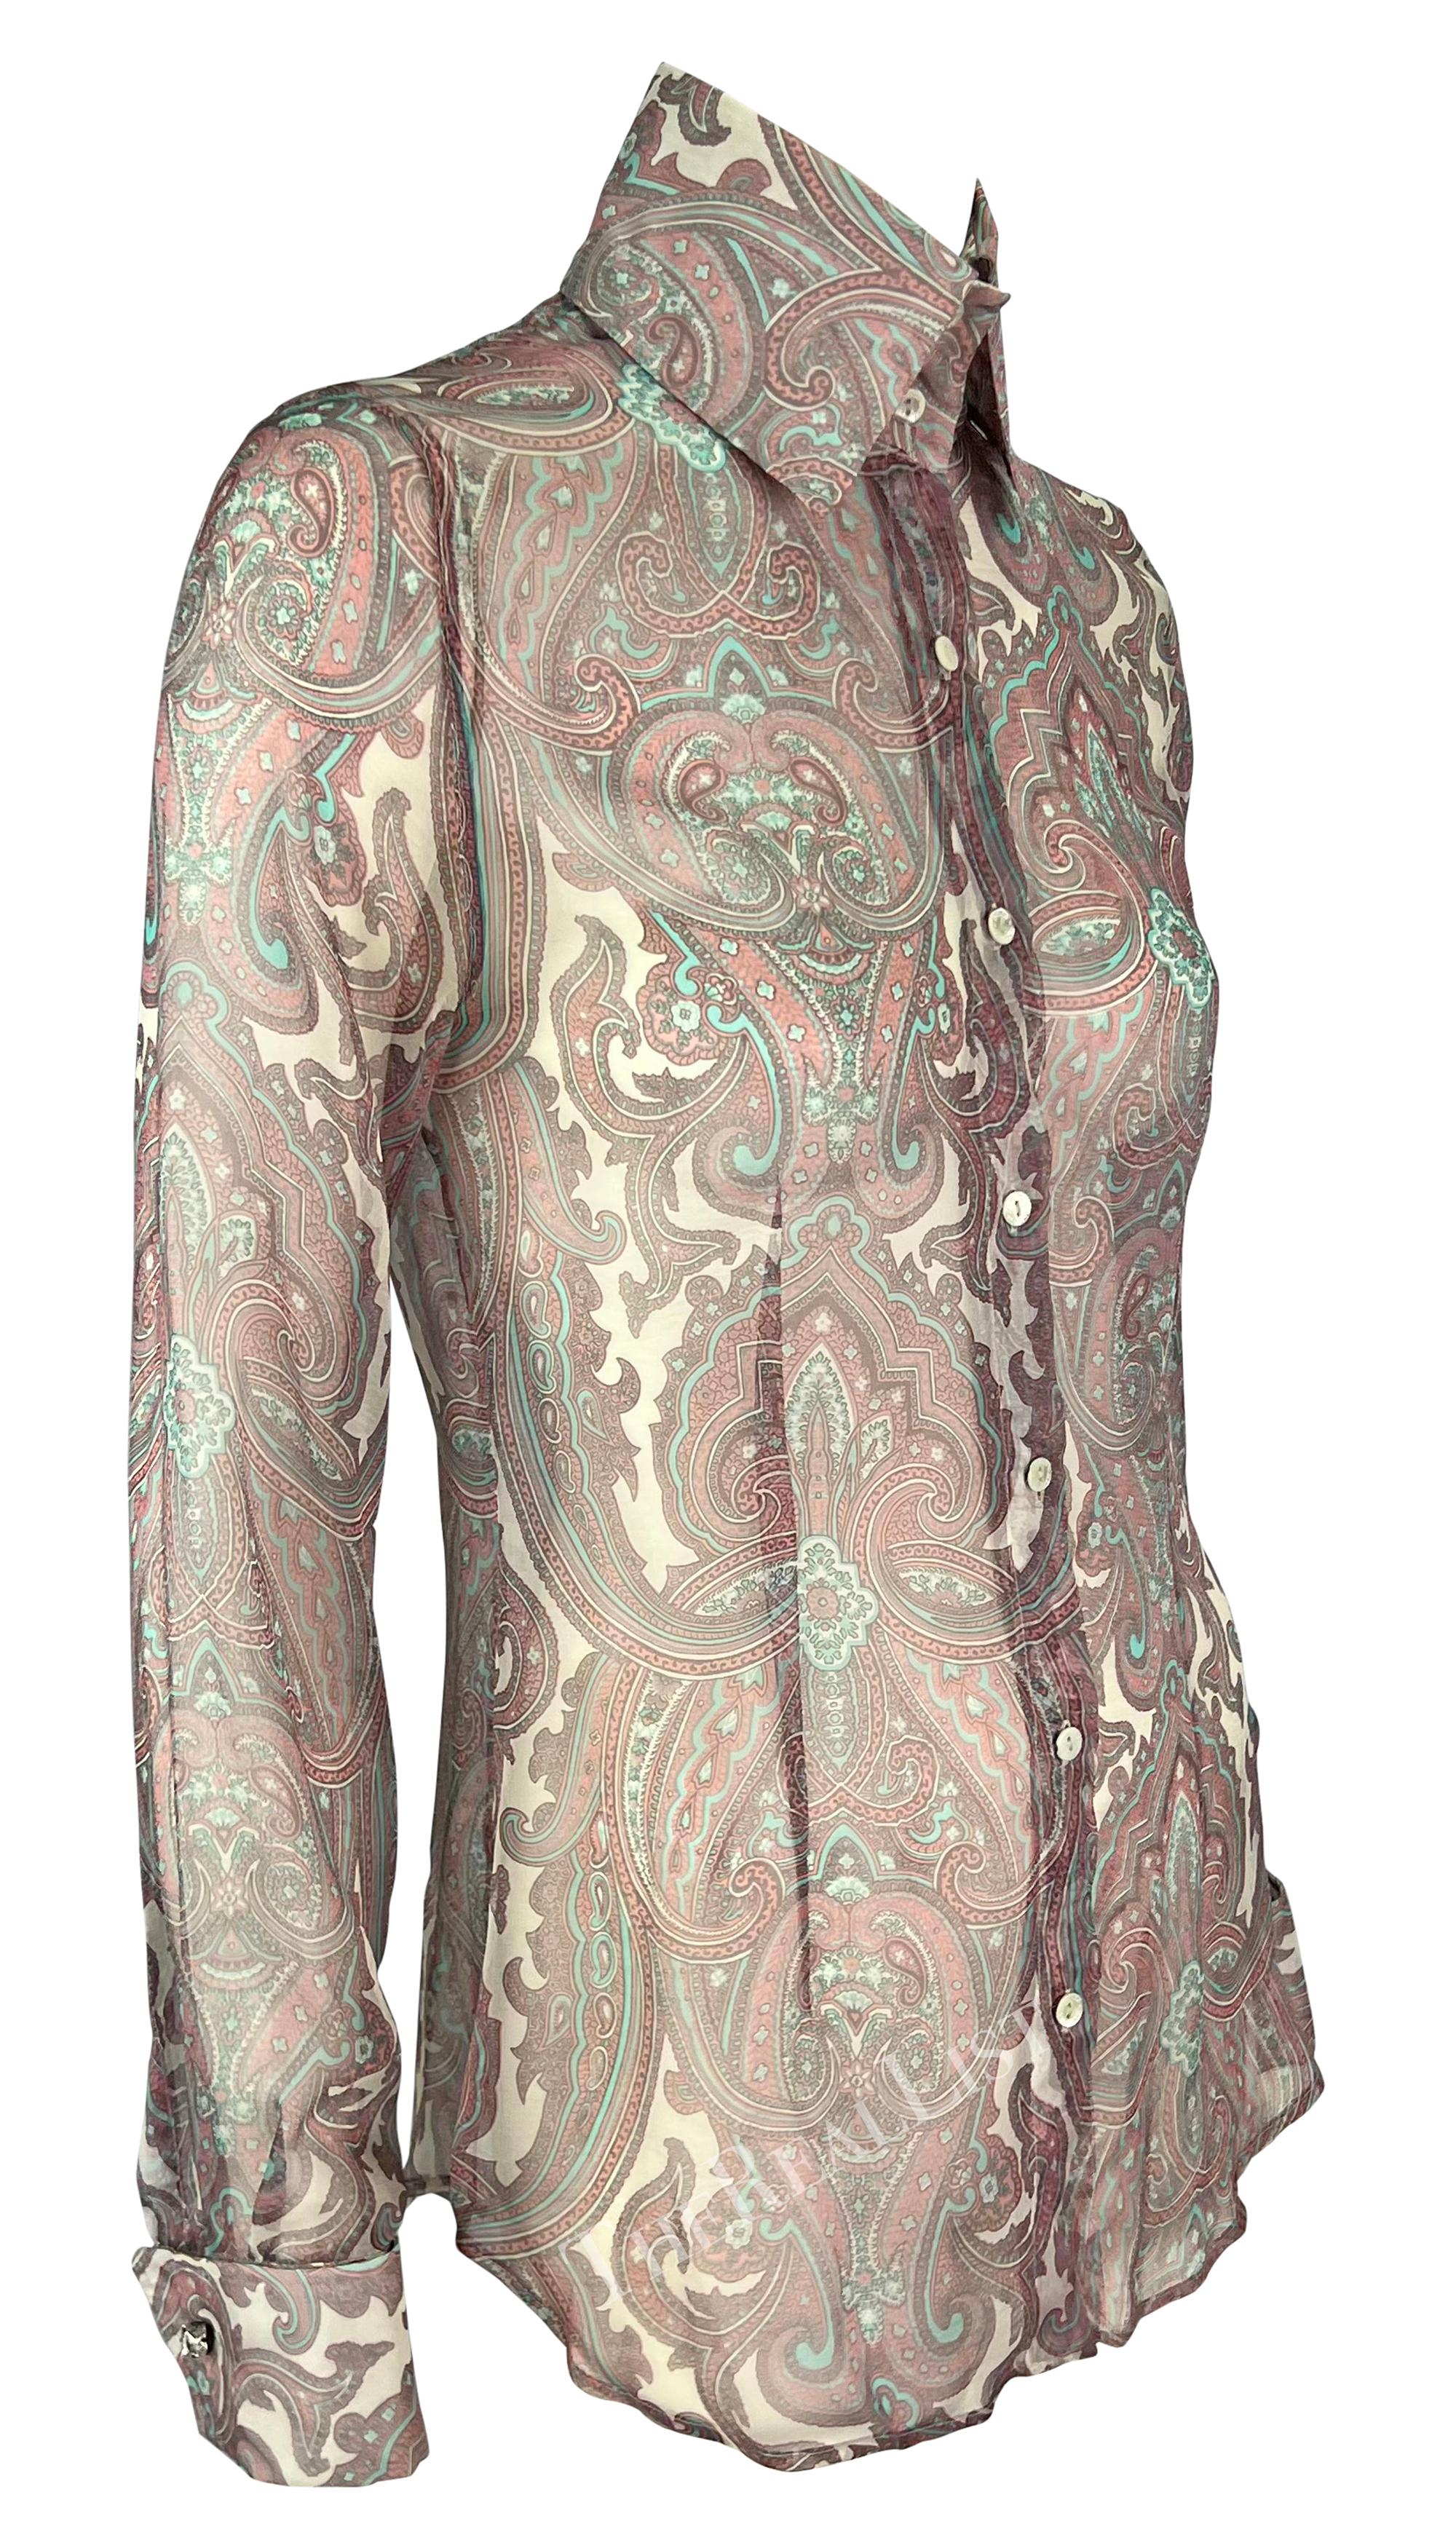 S/S 2000 Dolce & Gabbana Pink Paisley Sheer Button Rhinestone Cuff Shirt For Sale 7